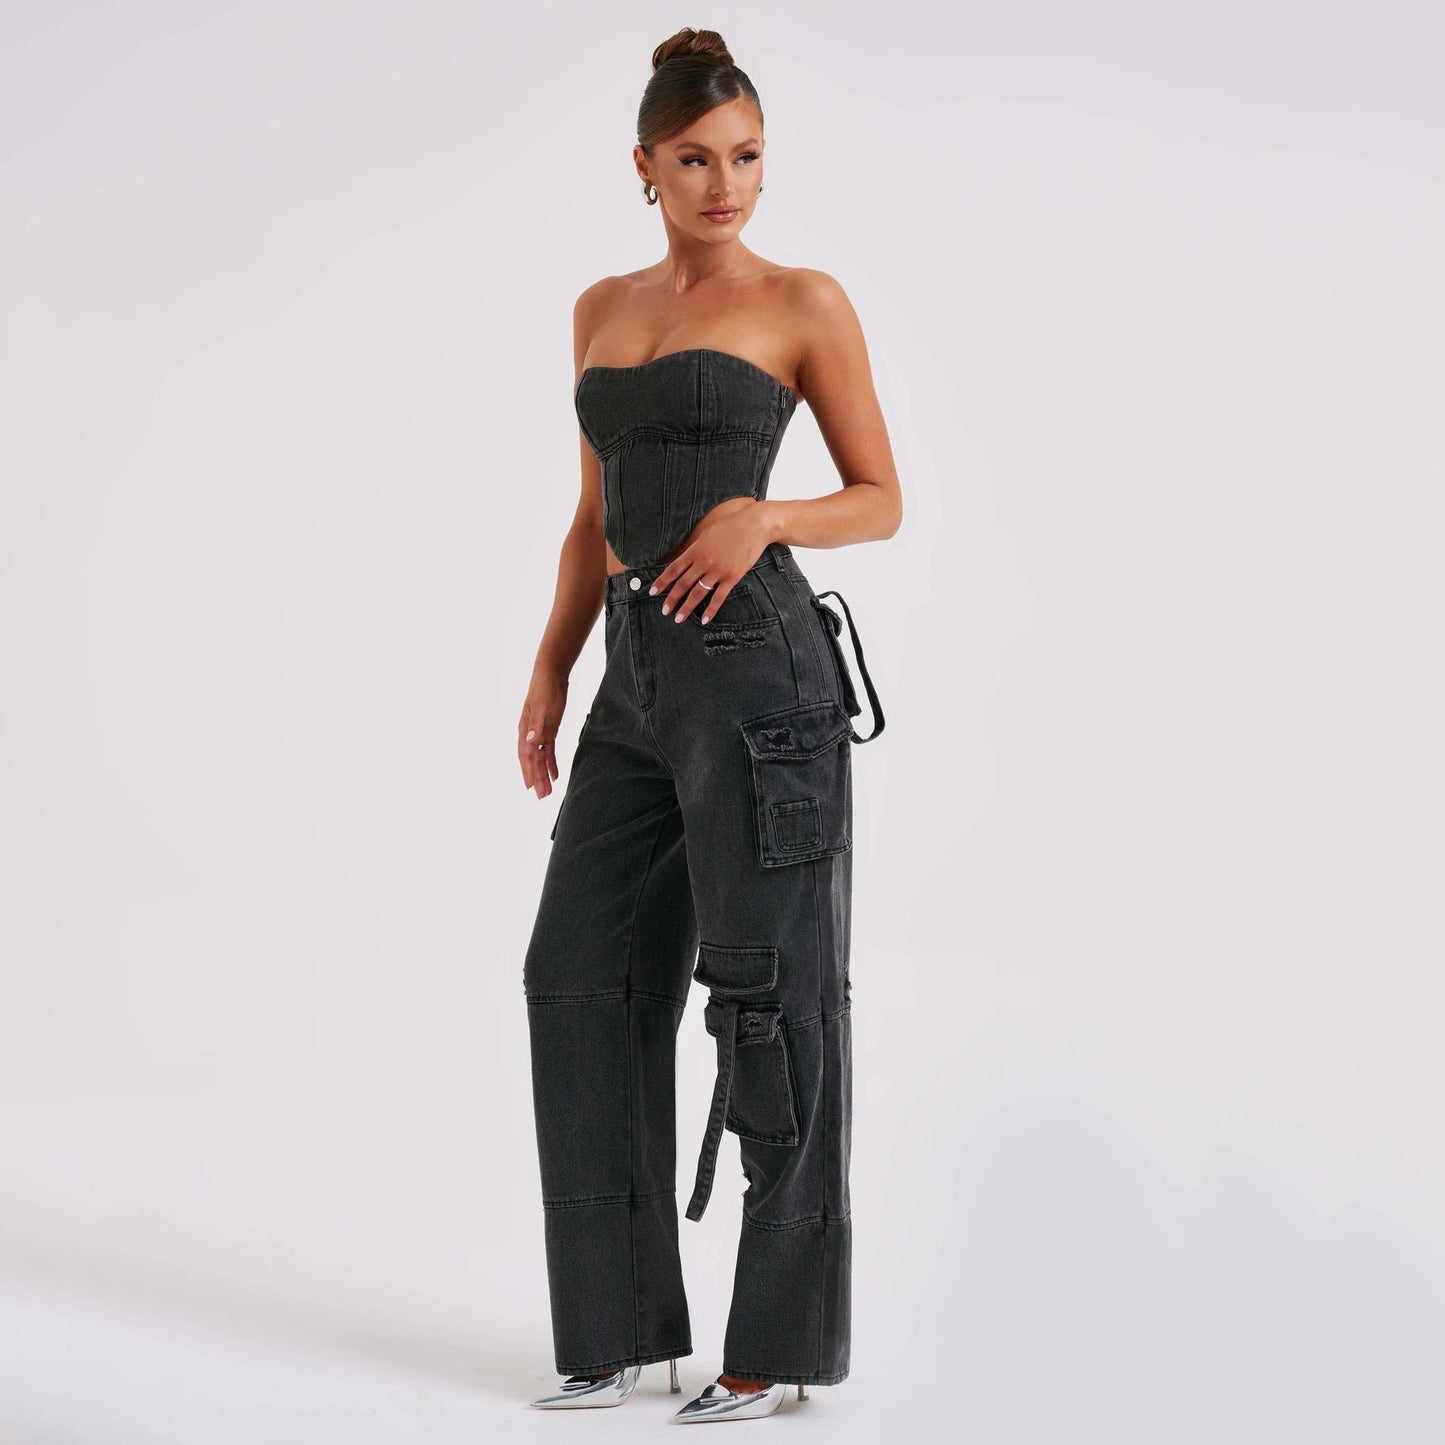 Cotton women's jeans – NextthinkShop